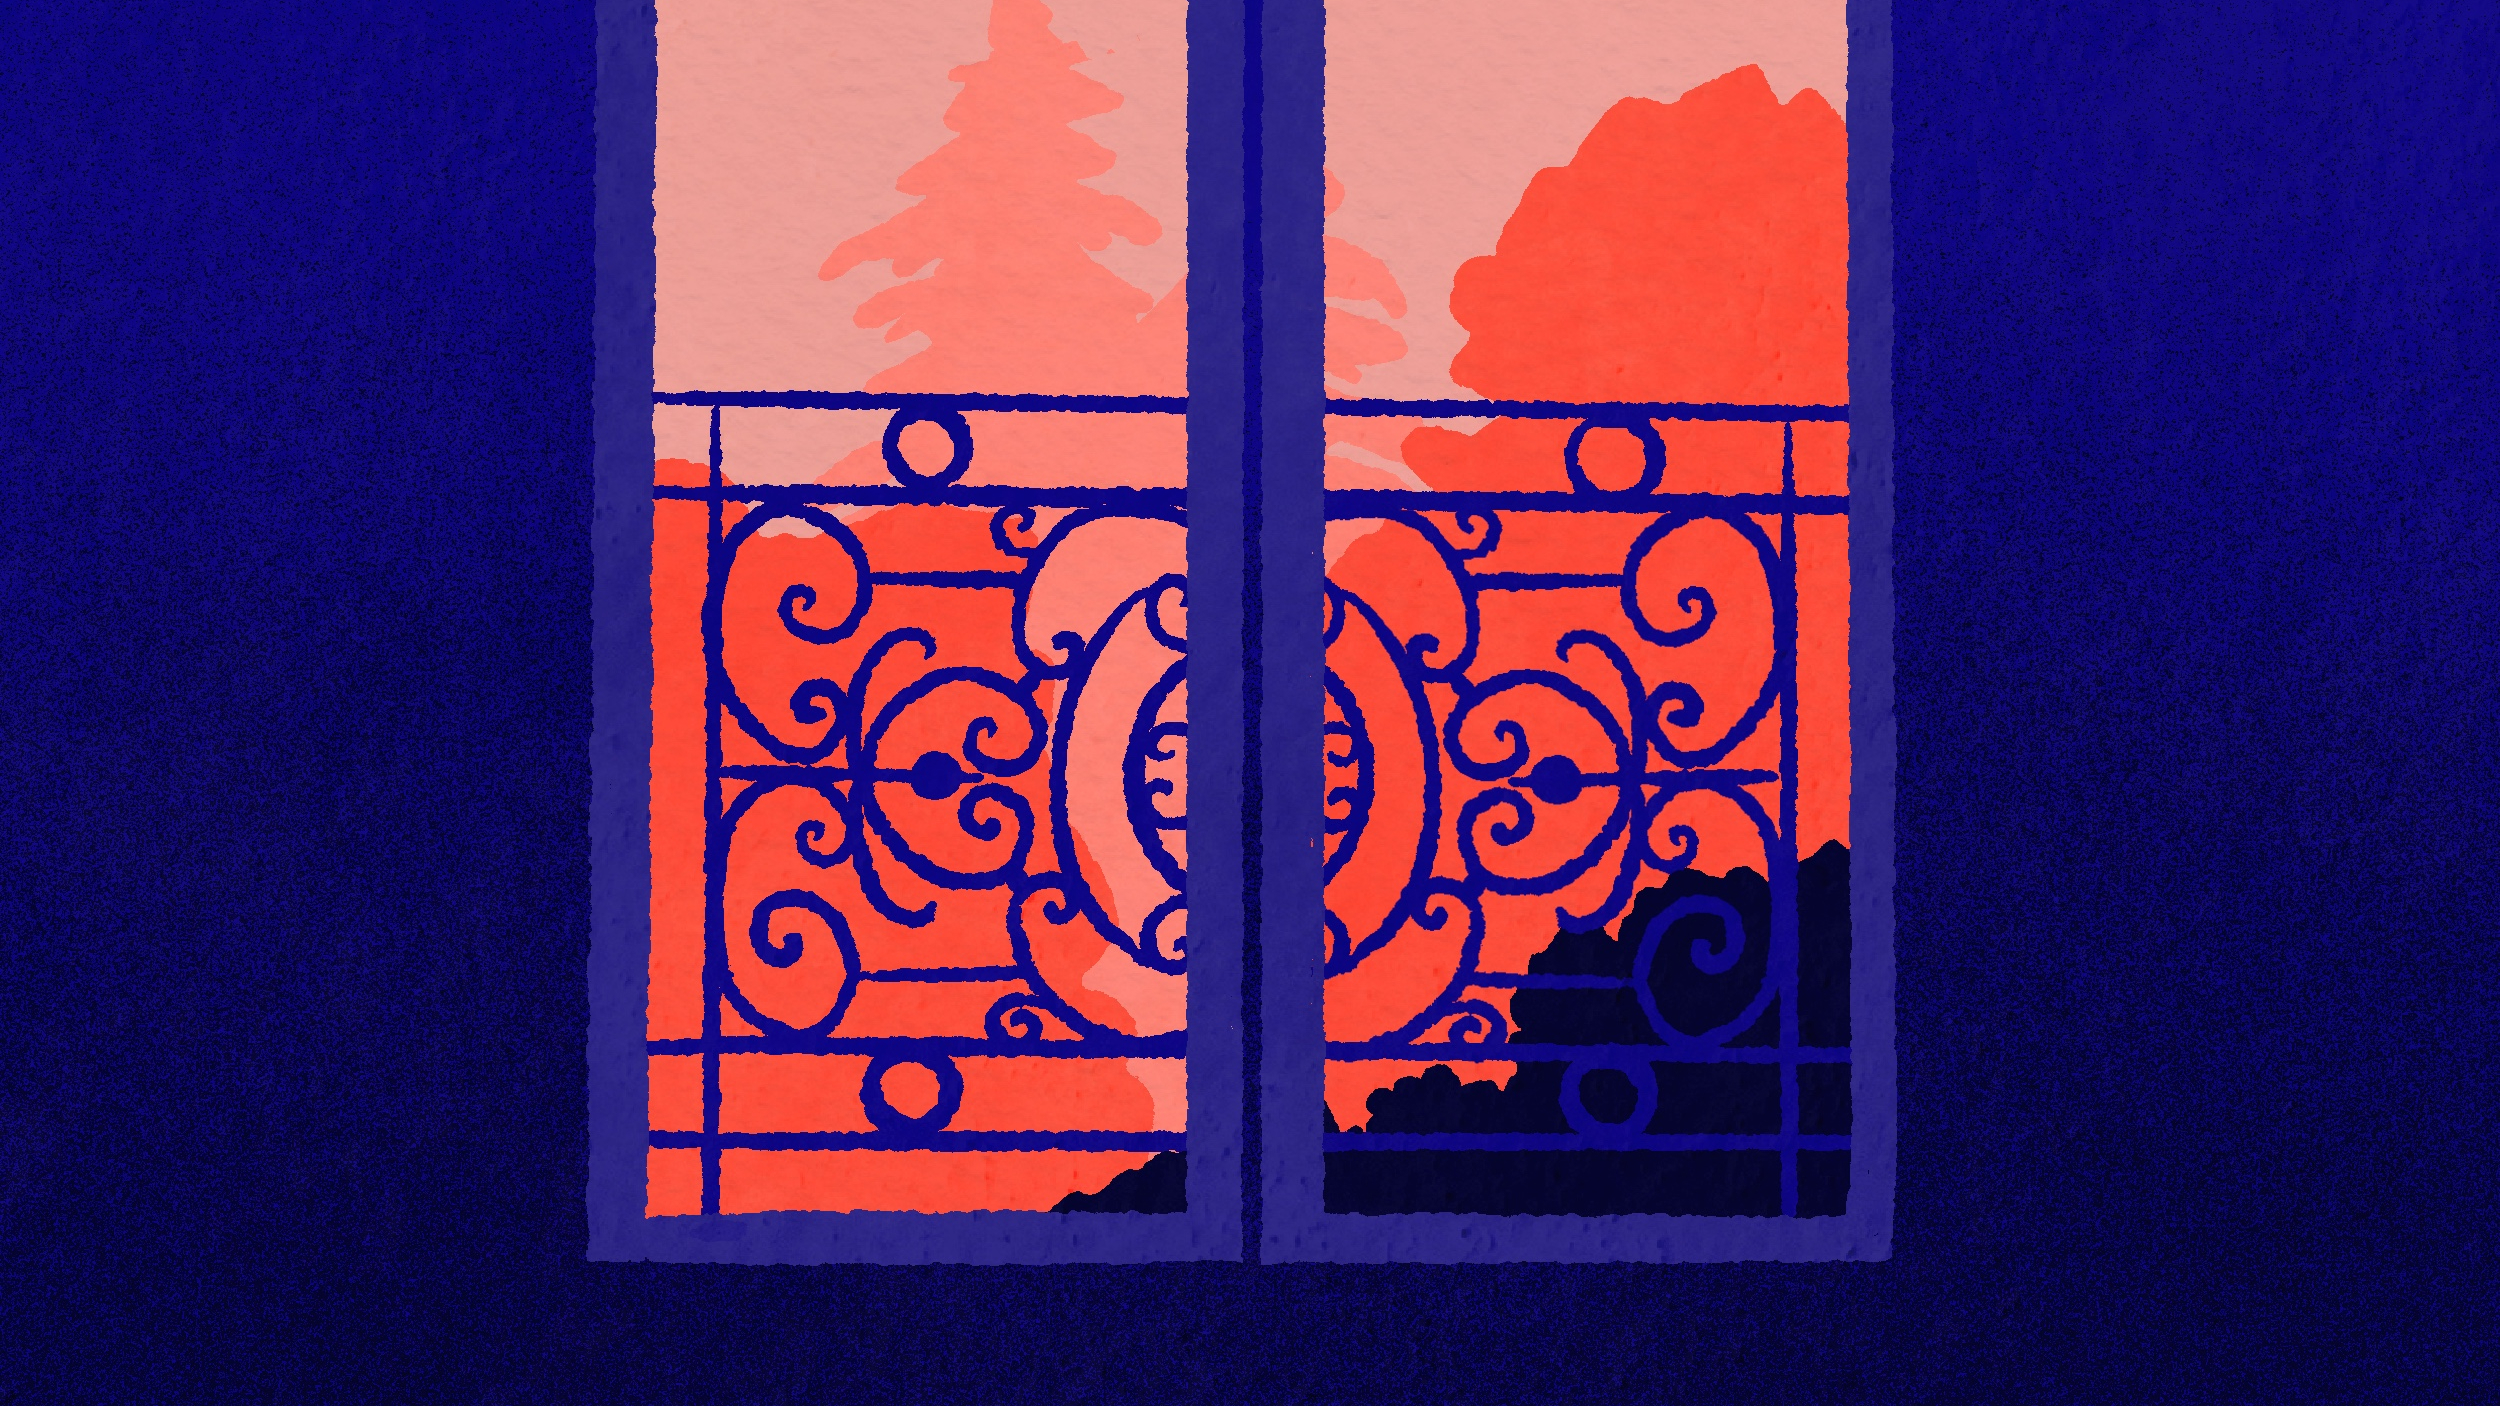 Pièce sombre, fenêtre fermée avec arbres à l'extérieur, dans un ton rouge orangé. Manon Combe pour Les Maux Bleus.